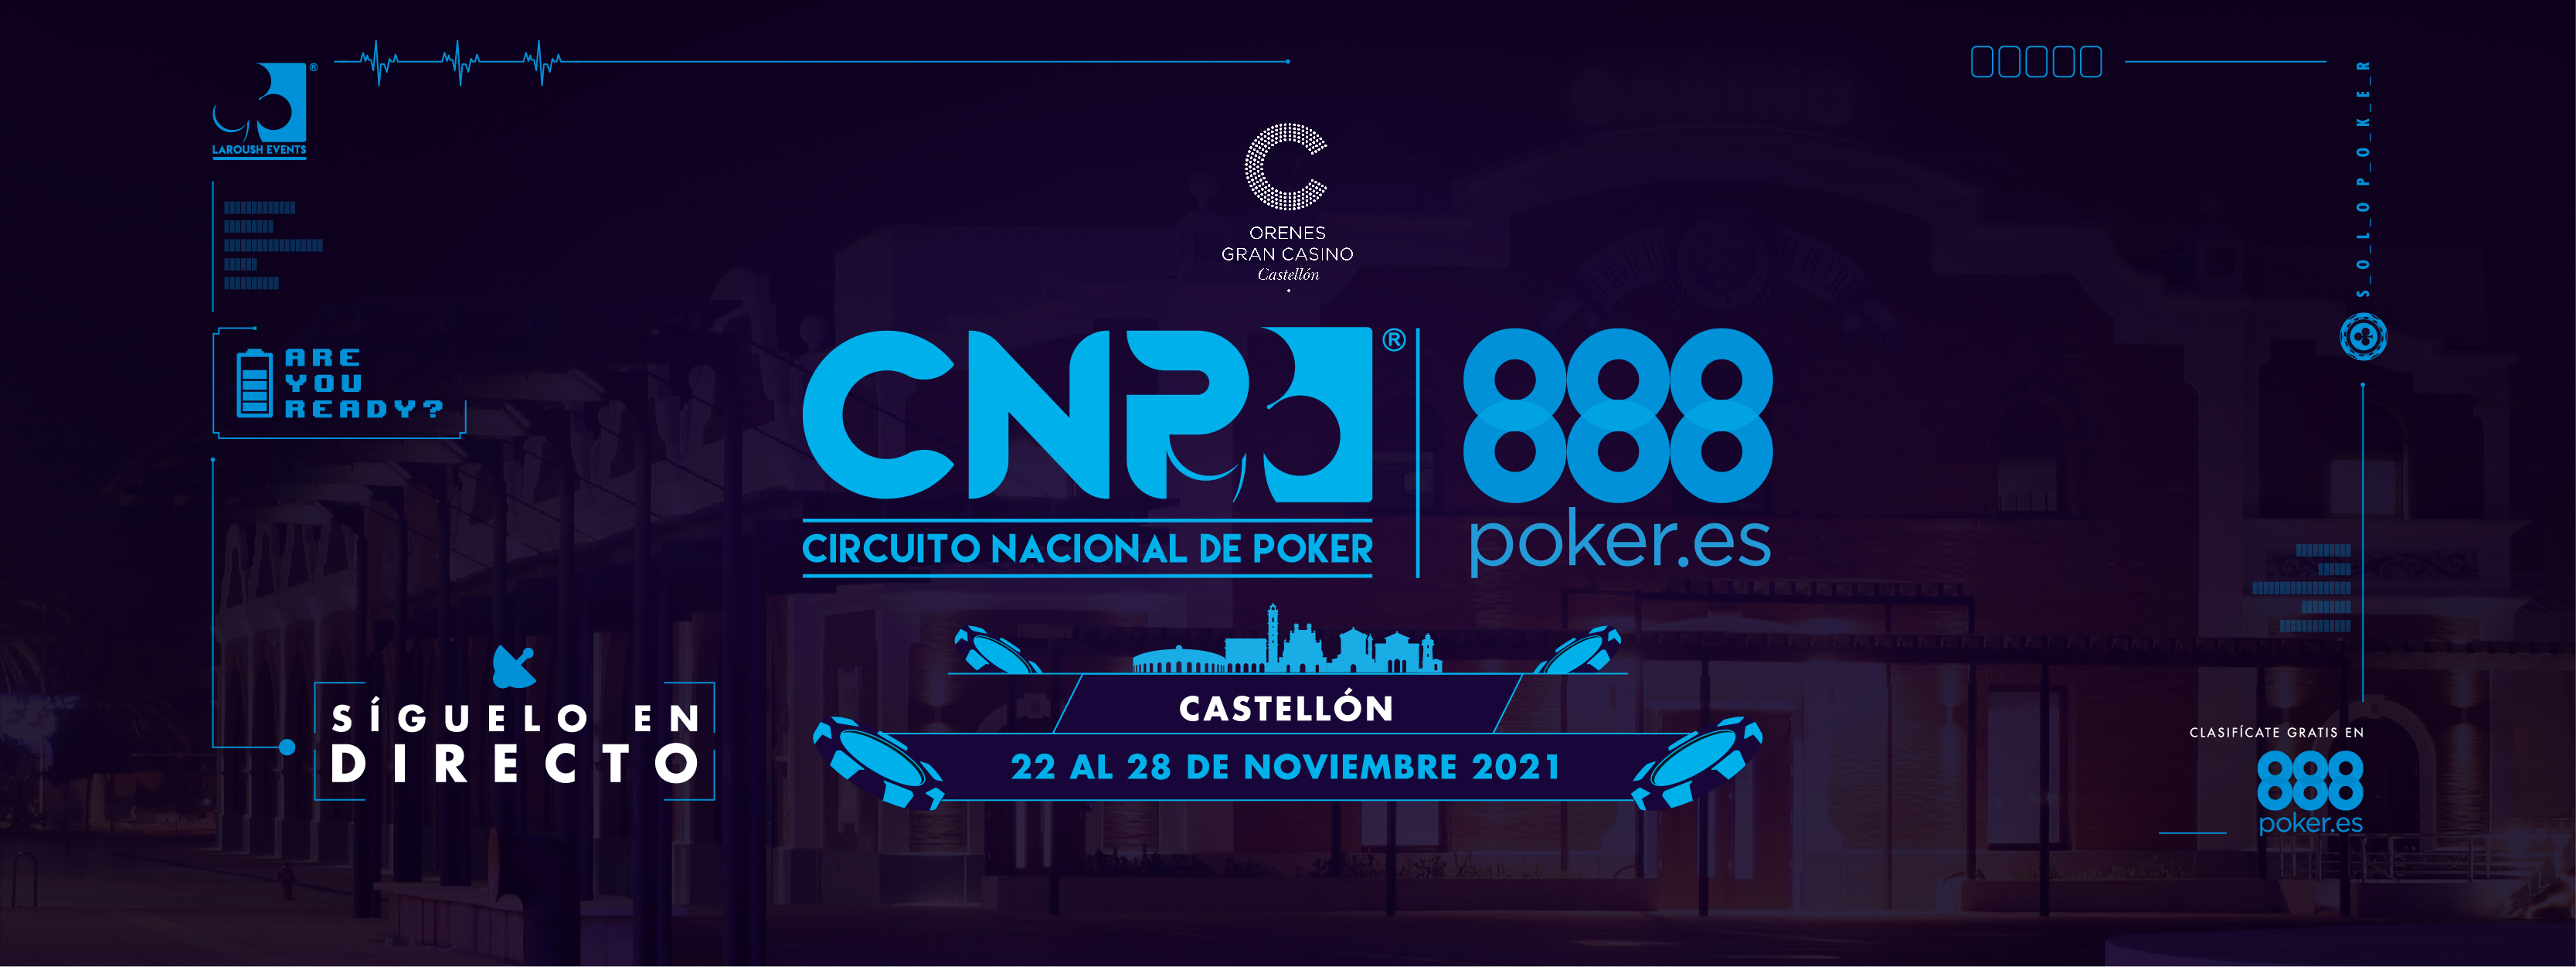 CNP888 Castellón